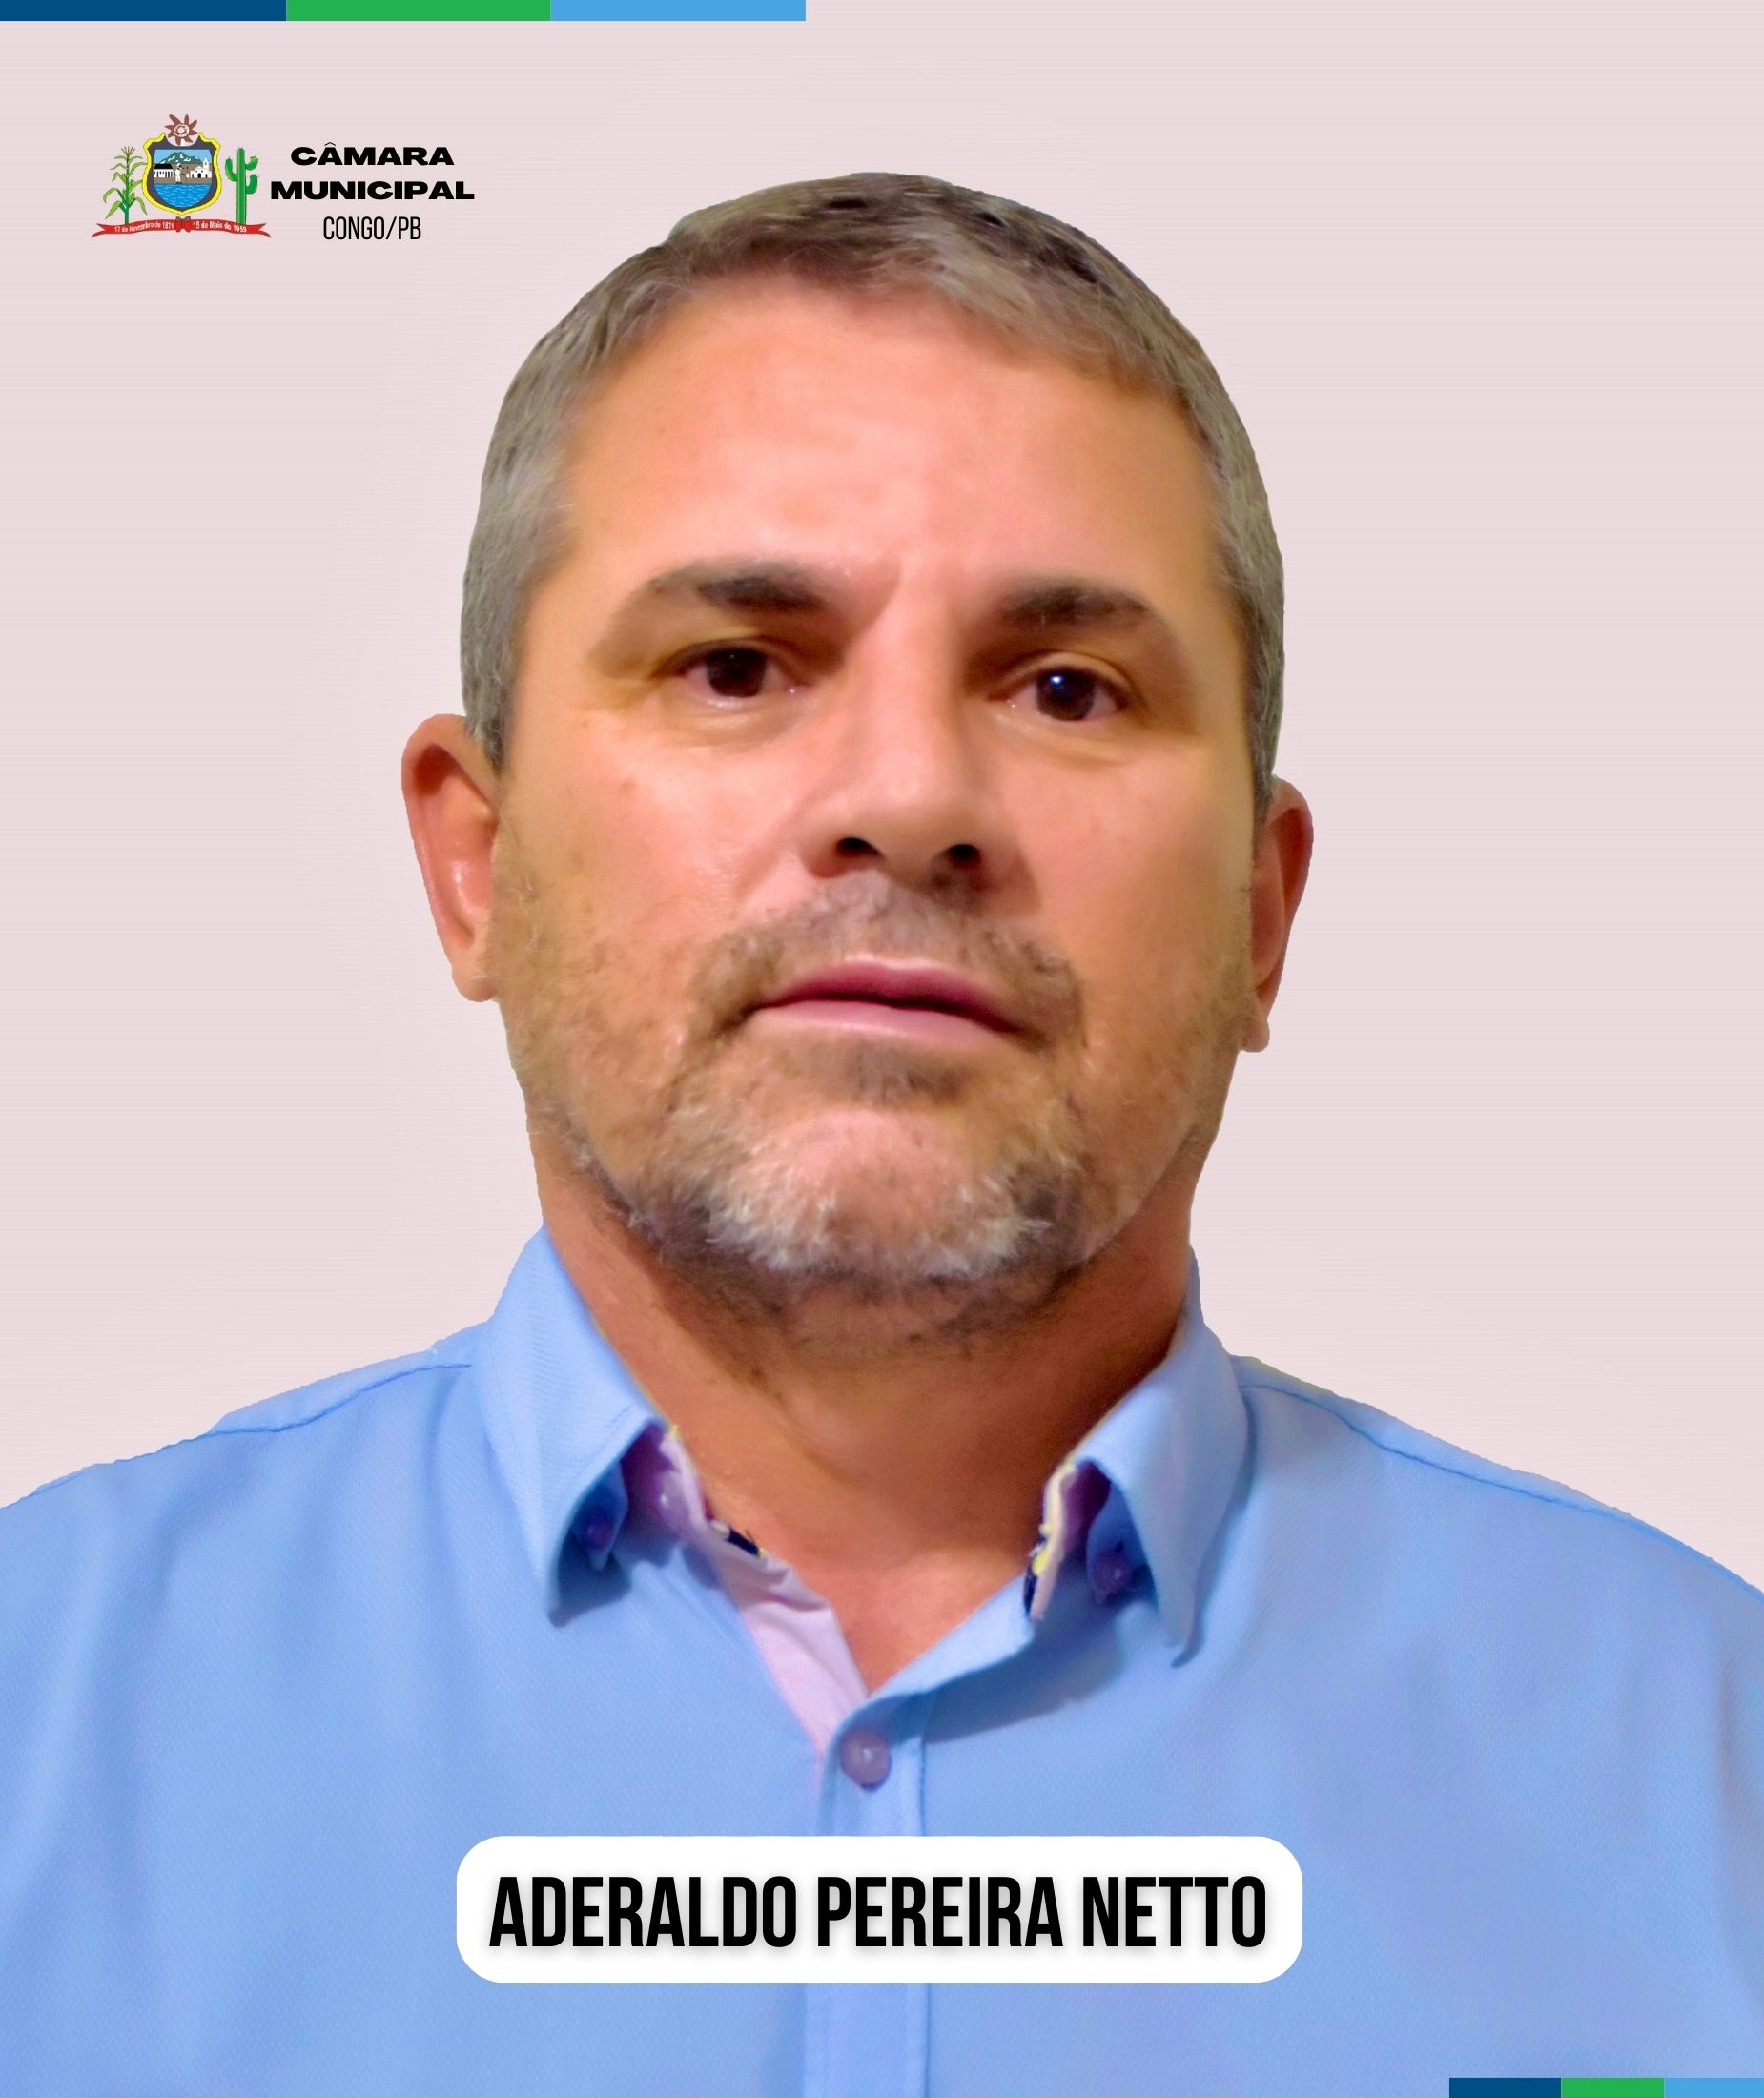 Aderaldo Pereira Netto